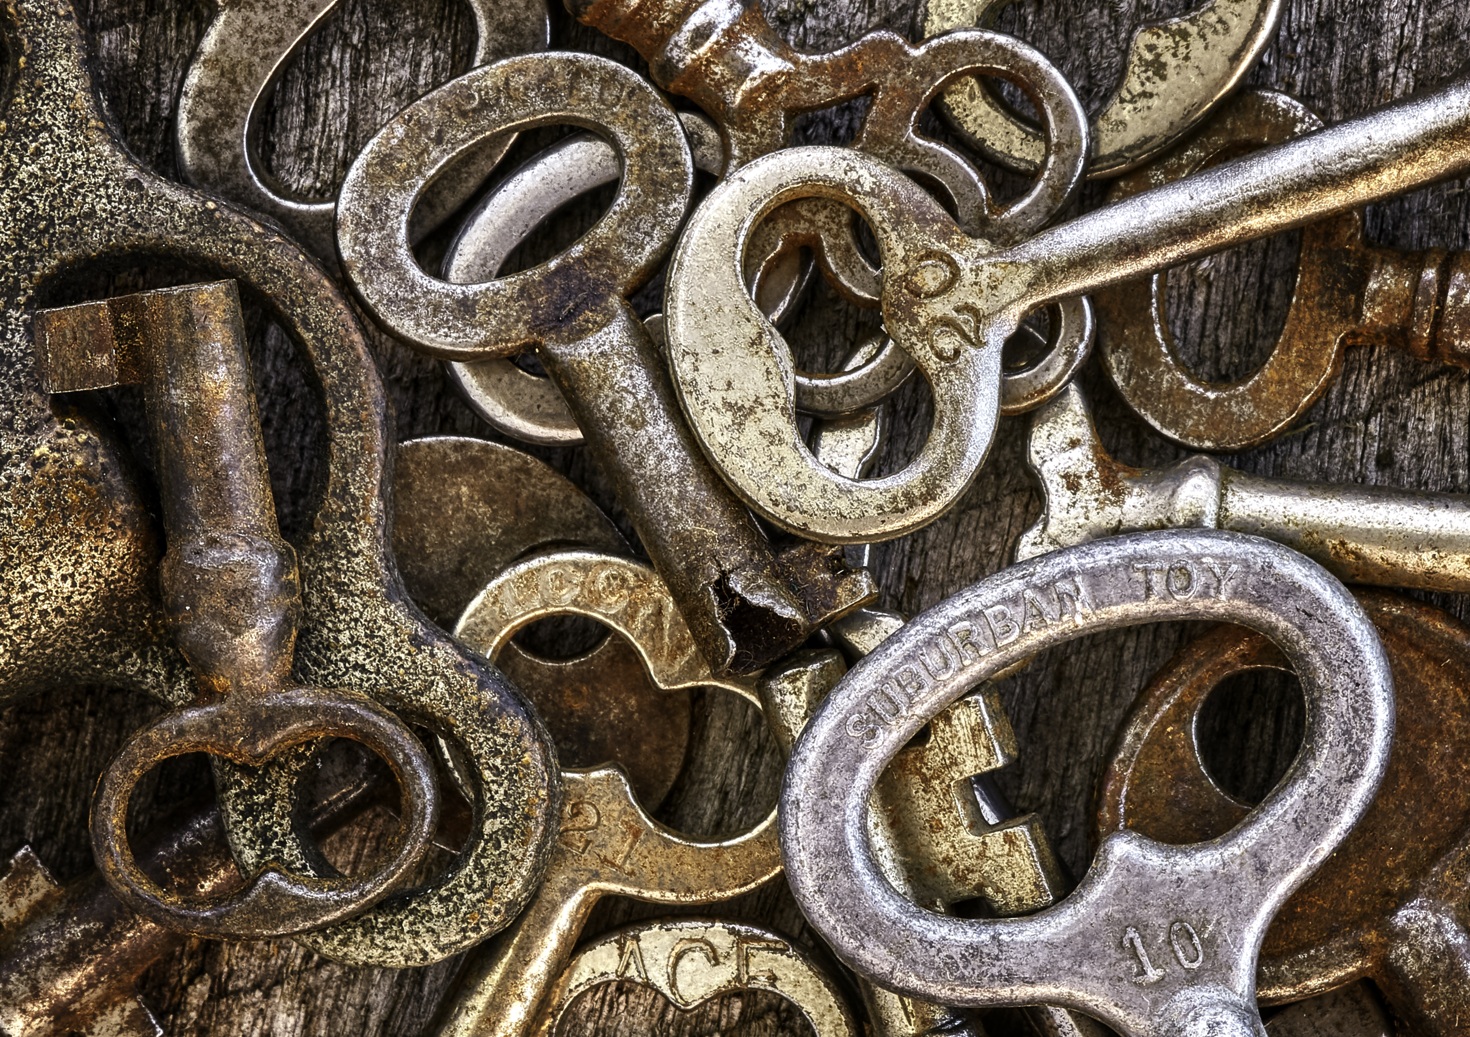 Rusty Keys by Bob Crocker